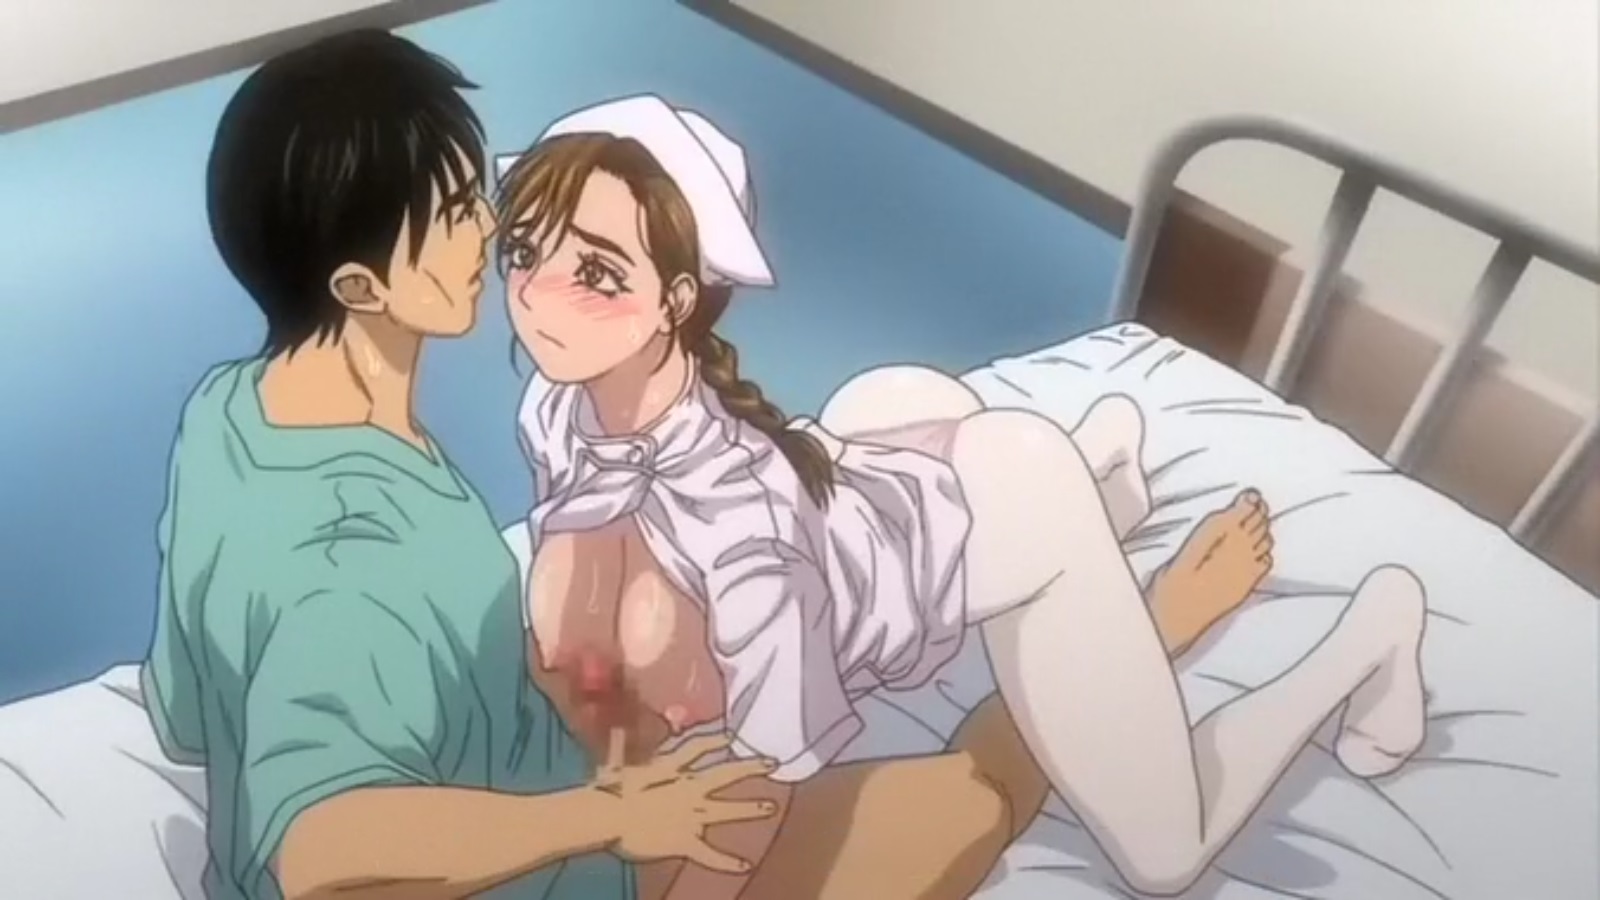 1600px x 900px - Hentai Movie Hospital Nurse Fujita Yukari Porn | HentaiMovie.Tv